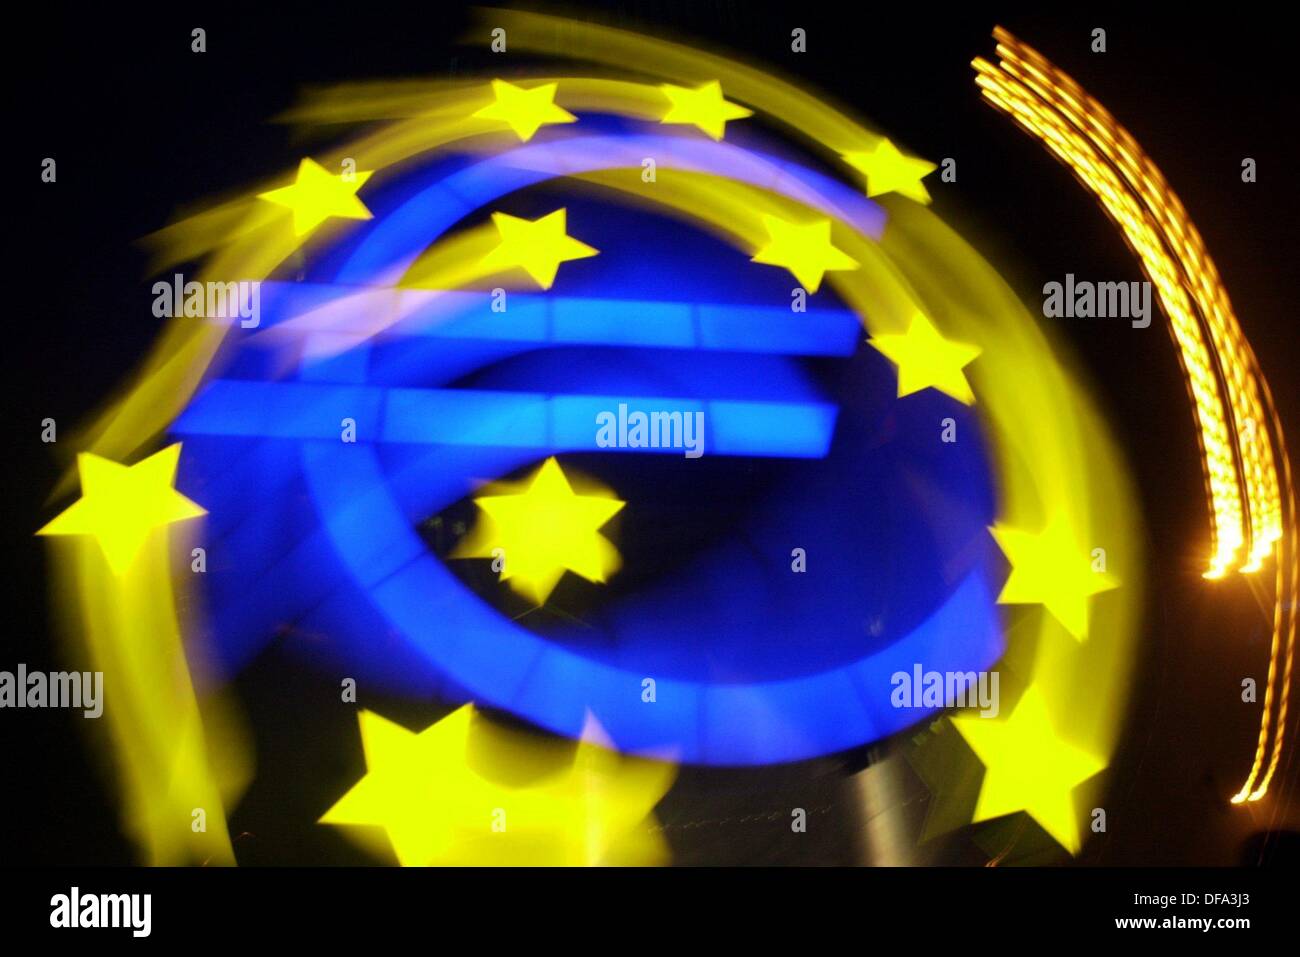 Le symbole de l'Euro est photographié avec un effet tournant en face de la Banque centrale européenne à Francfort, Allemagne, 28 décembre 2002. Un an après l'introduction de l'euro, la majorité des Allemands pleure après le D-mark se référant à une enquête de la Commission de l'UE. Mots clés : affaires, économie d'entreprise  et finance, monnaie, argent, euro, vision de nuit, illuminé, les étoiles Banque D'Images